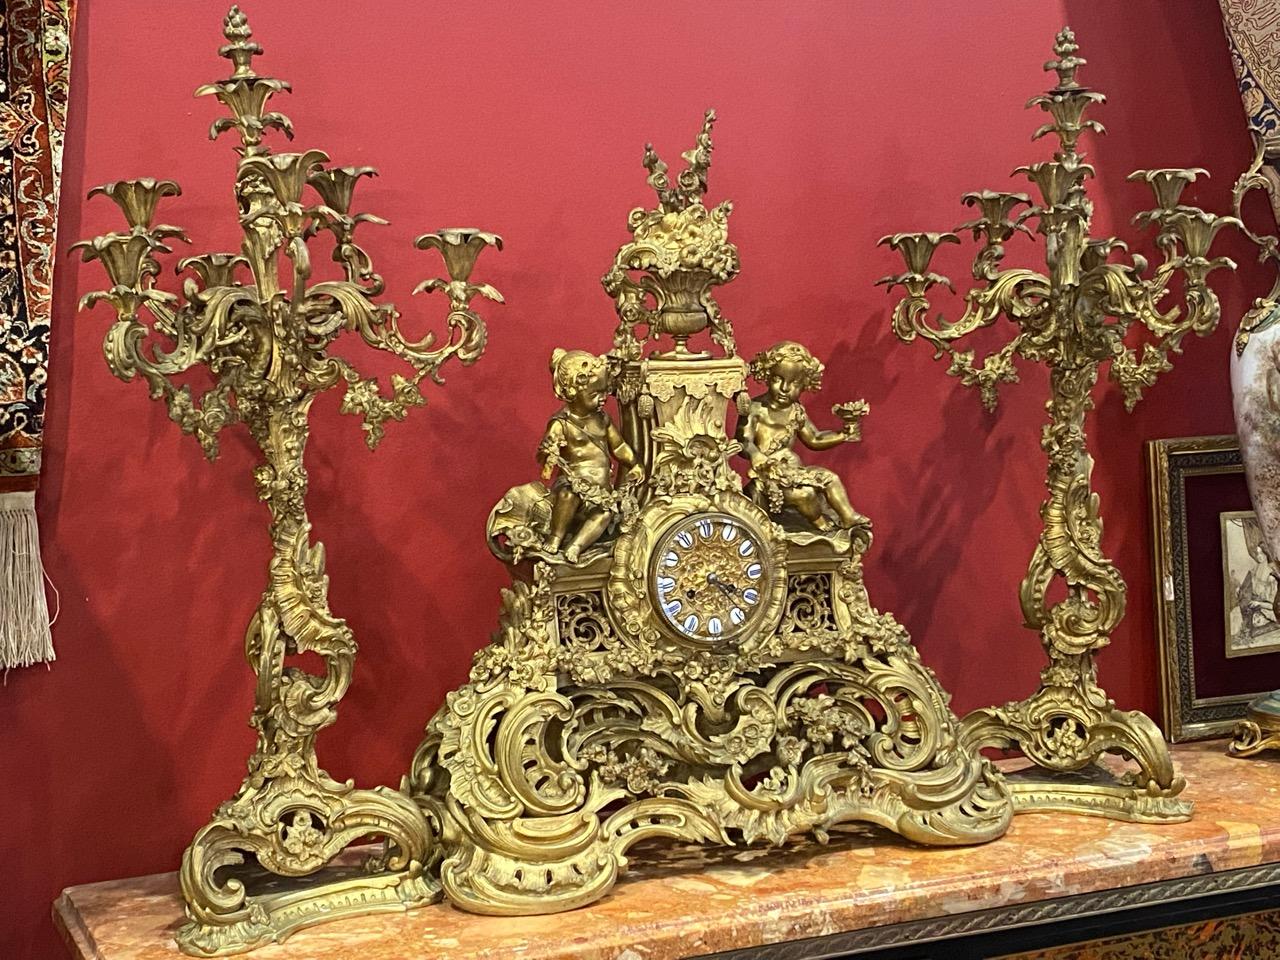 Wunderschöne kaiserliche antike französische vergoldete Bronzegarnitur mit Uhr und einem Paar Kandelaber, sehr fein von Hand gearbeitet mit schönem floralem Muster und schönen Engeln, sehr dekorativ für ein Palasthaus.